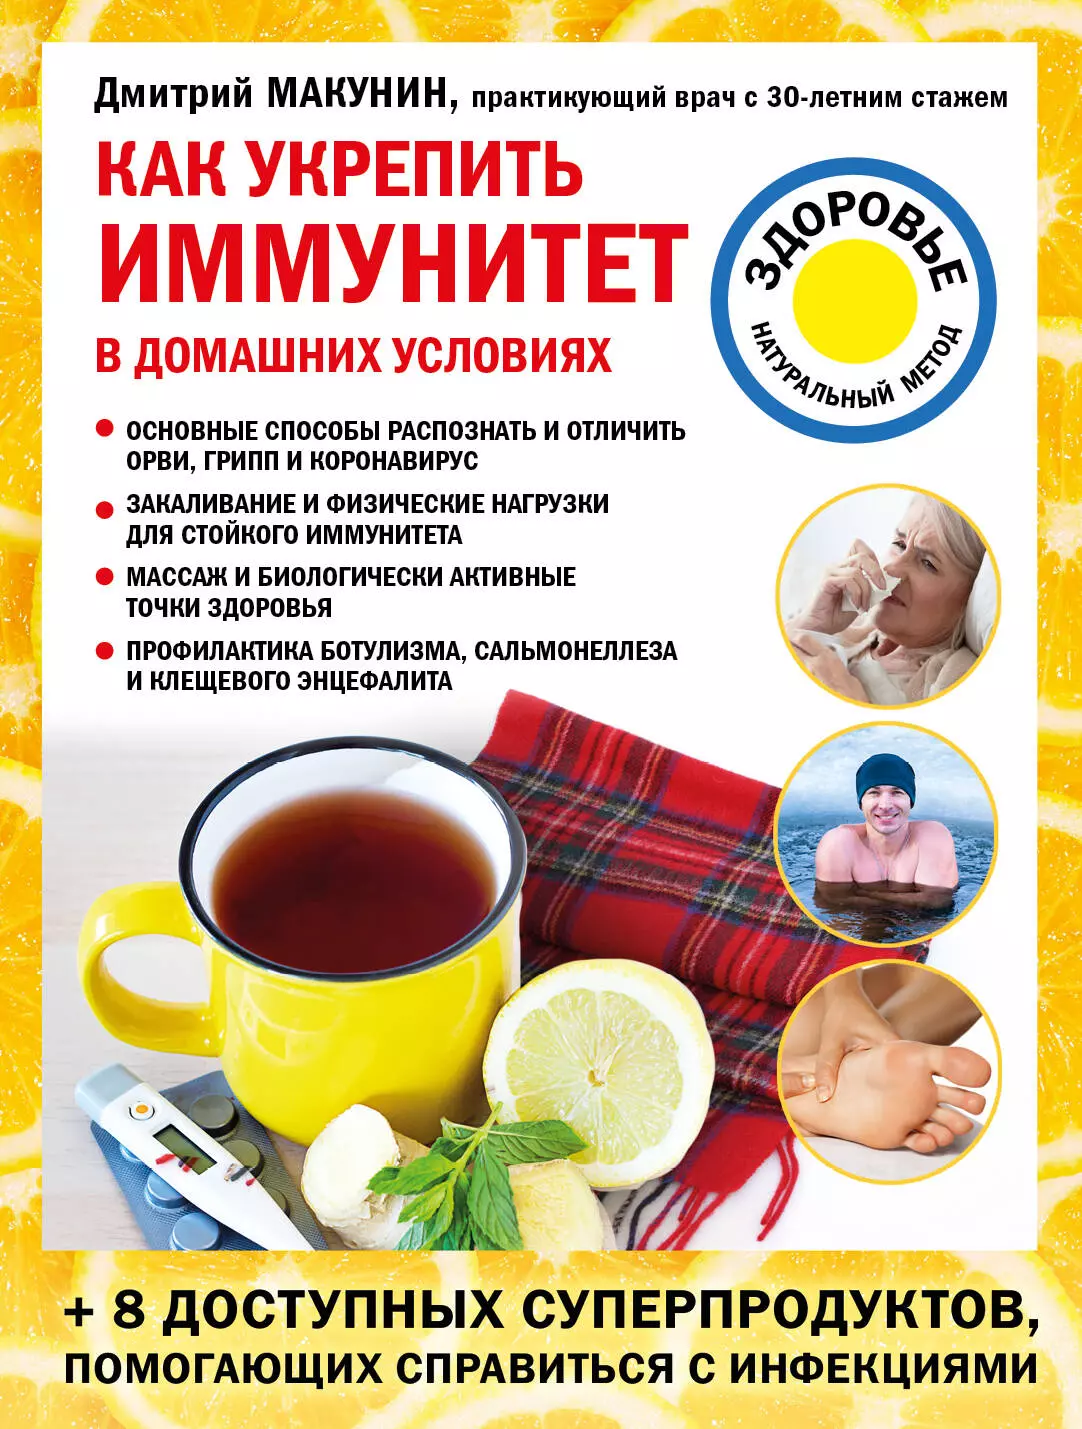 Макунин Дмитрий Александрович - Как укрепить иммунитет в домашних условиях